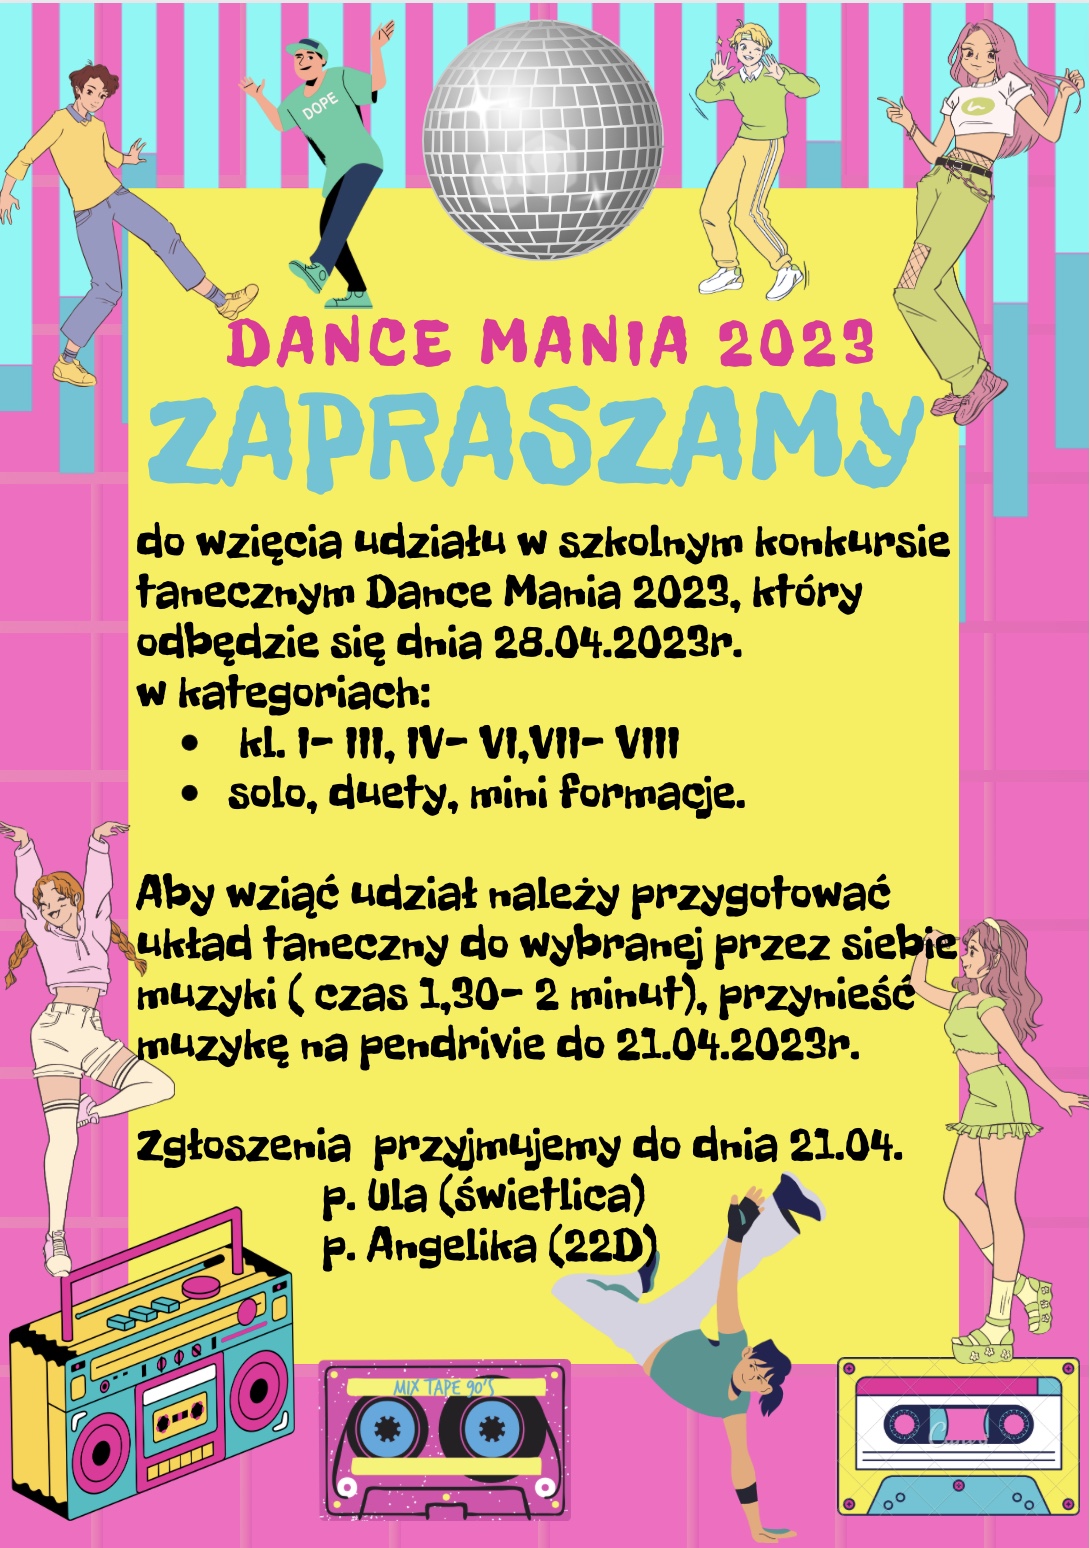 Dance Mania 2023 - plakat informacyjny - konkurs taneczny